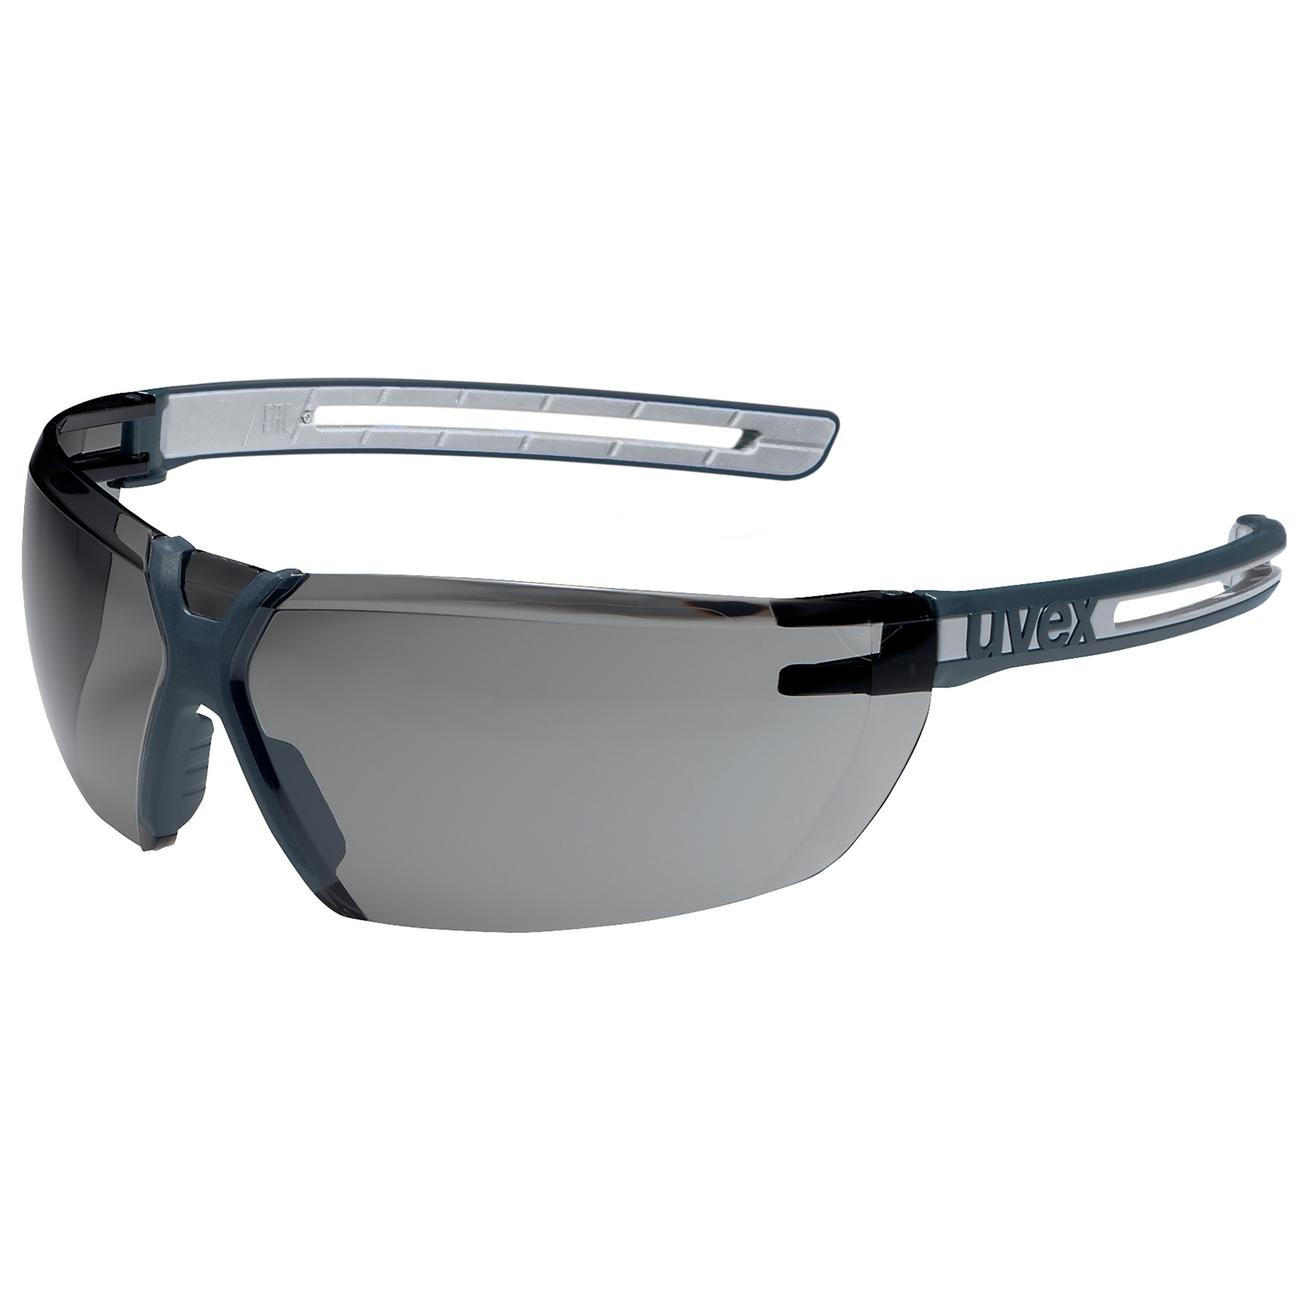 Brýle uvex x-fit pro Kód produktu: 9199277, Provedení zorníku: PC šedý 23%/5-2,5; SV excellence, rám. antracit/šedý, bez pojezdu